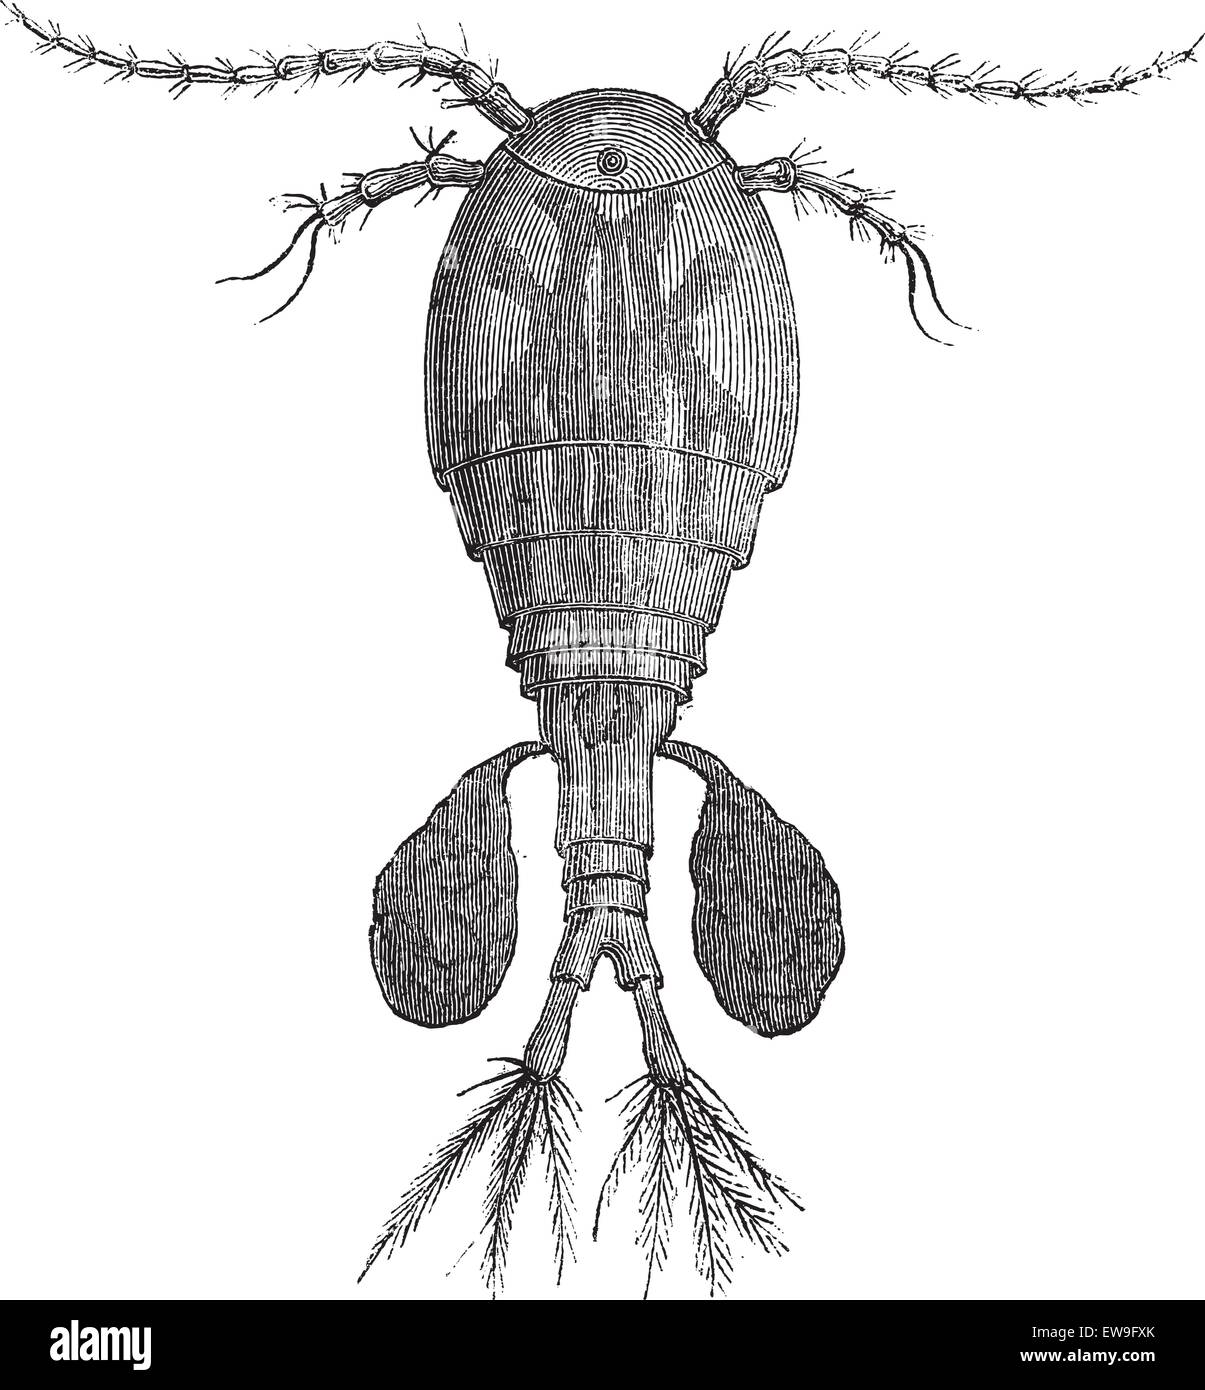 De copépodos de agua dulce o Cyclops sp., vintage ilustración grabada. Le Magasin pintoresco - Larive y Fleury - 1874 Ilustración del Vector